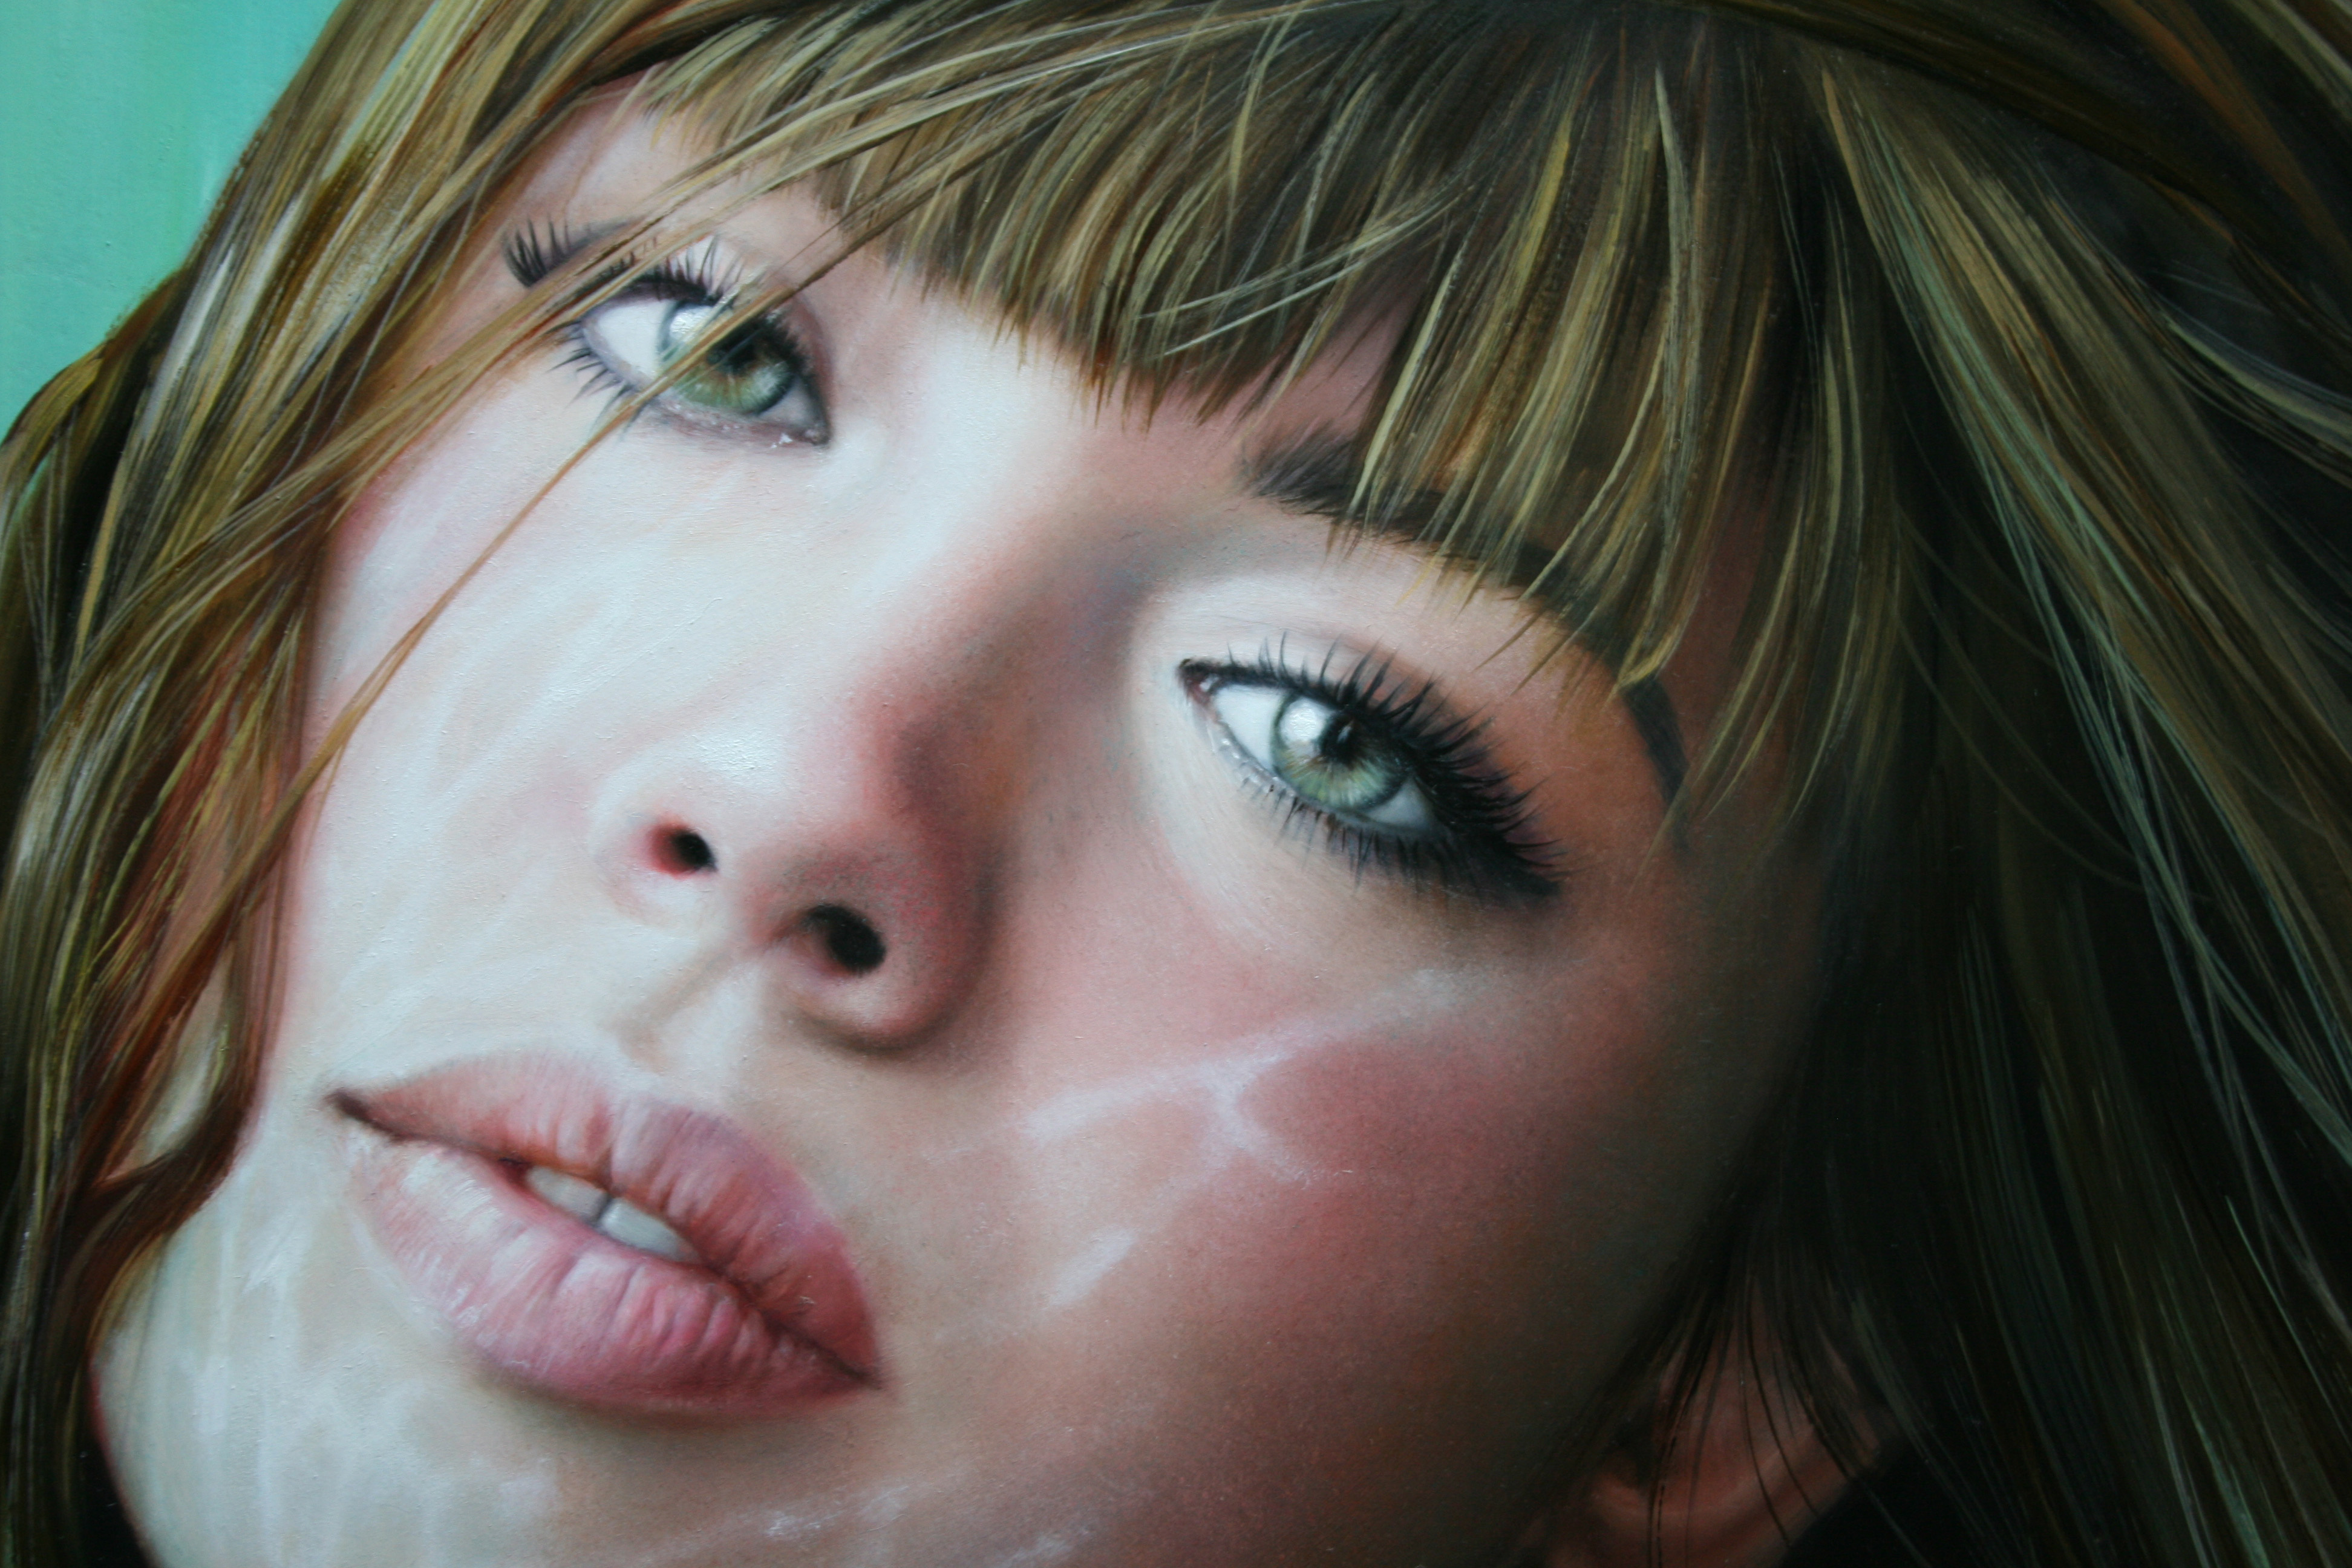 painting, Art, Christiane, Vleugels, Eyes, Lips, Face, Glance, Girls Wallpaper